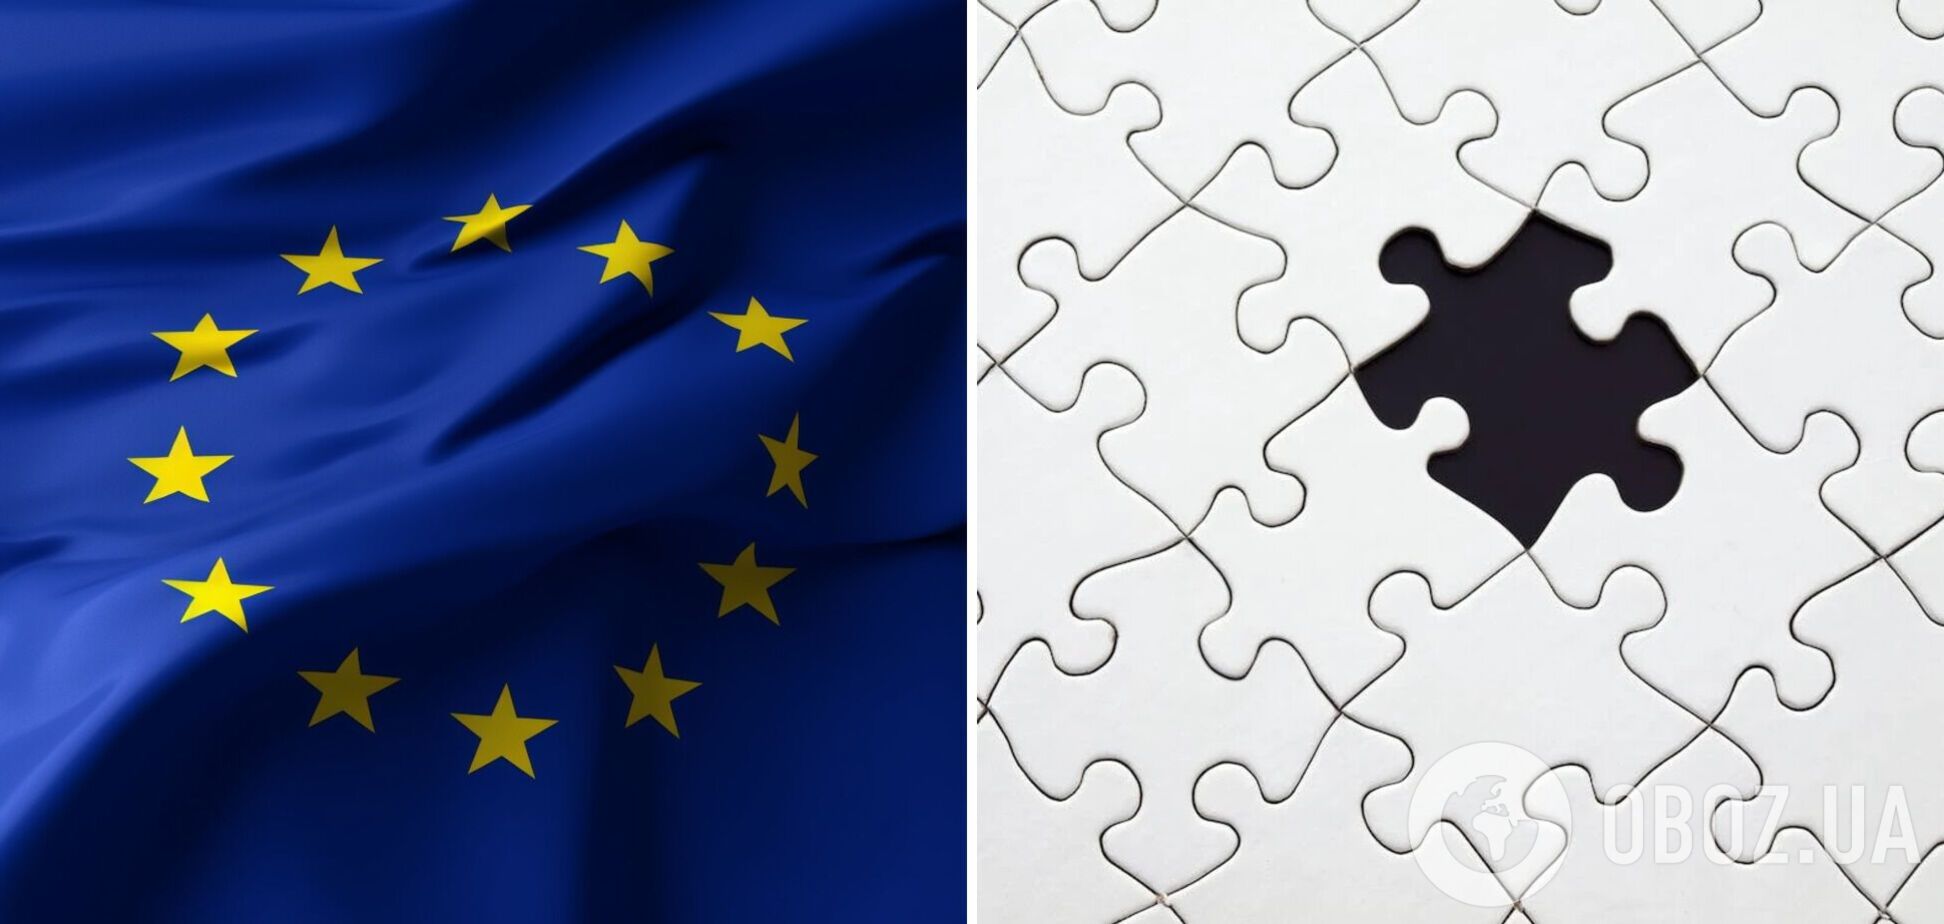 Головоломка для избранных: найдите флаг ЕС за 20 секунд